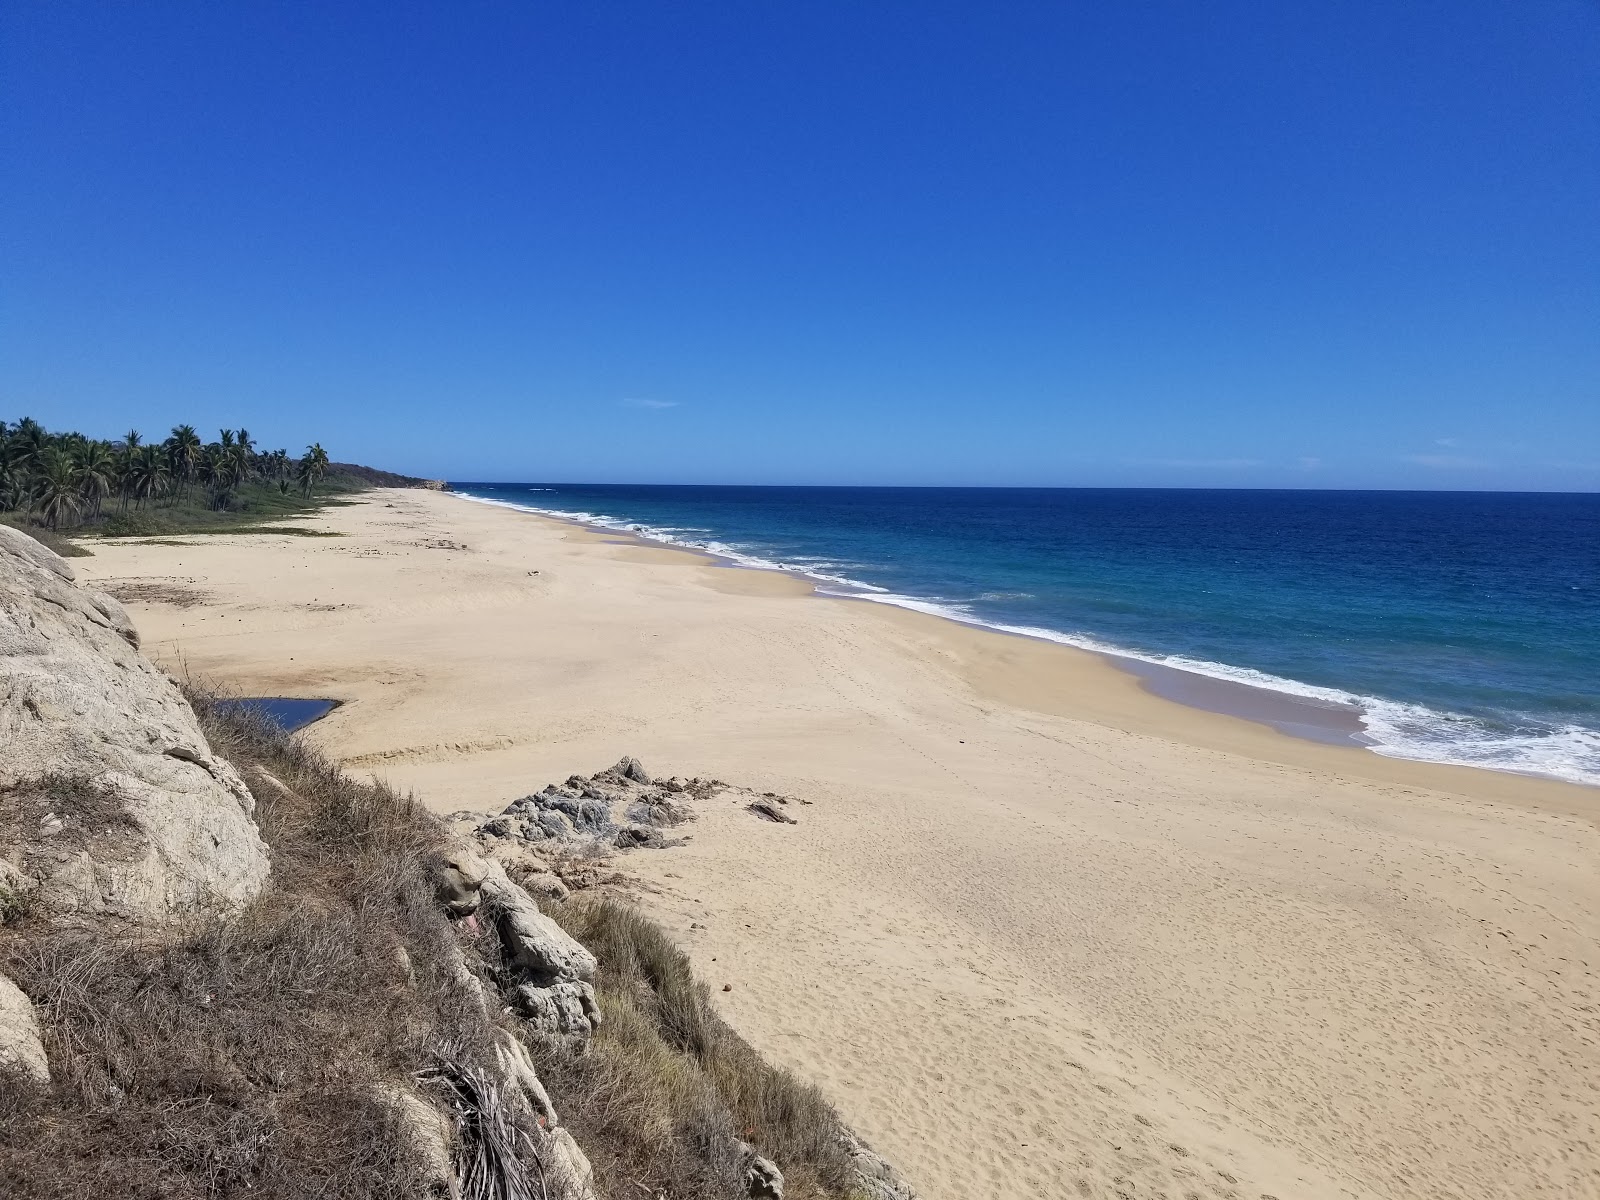 Zdjęcie Zapotengo beach z powierzchnią jasny, drobny piasek